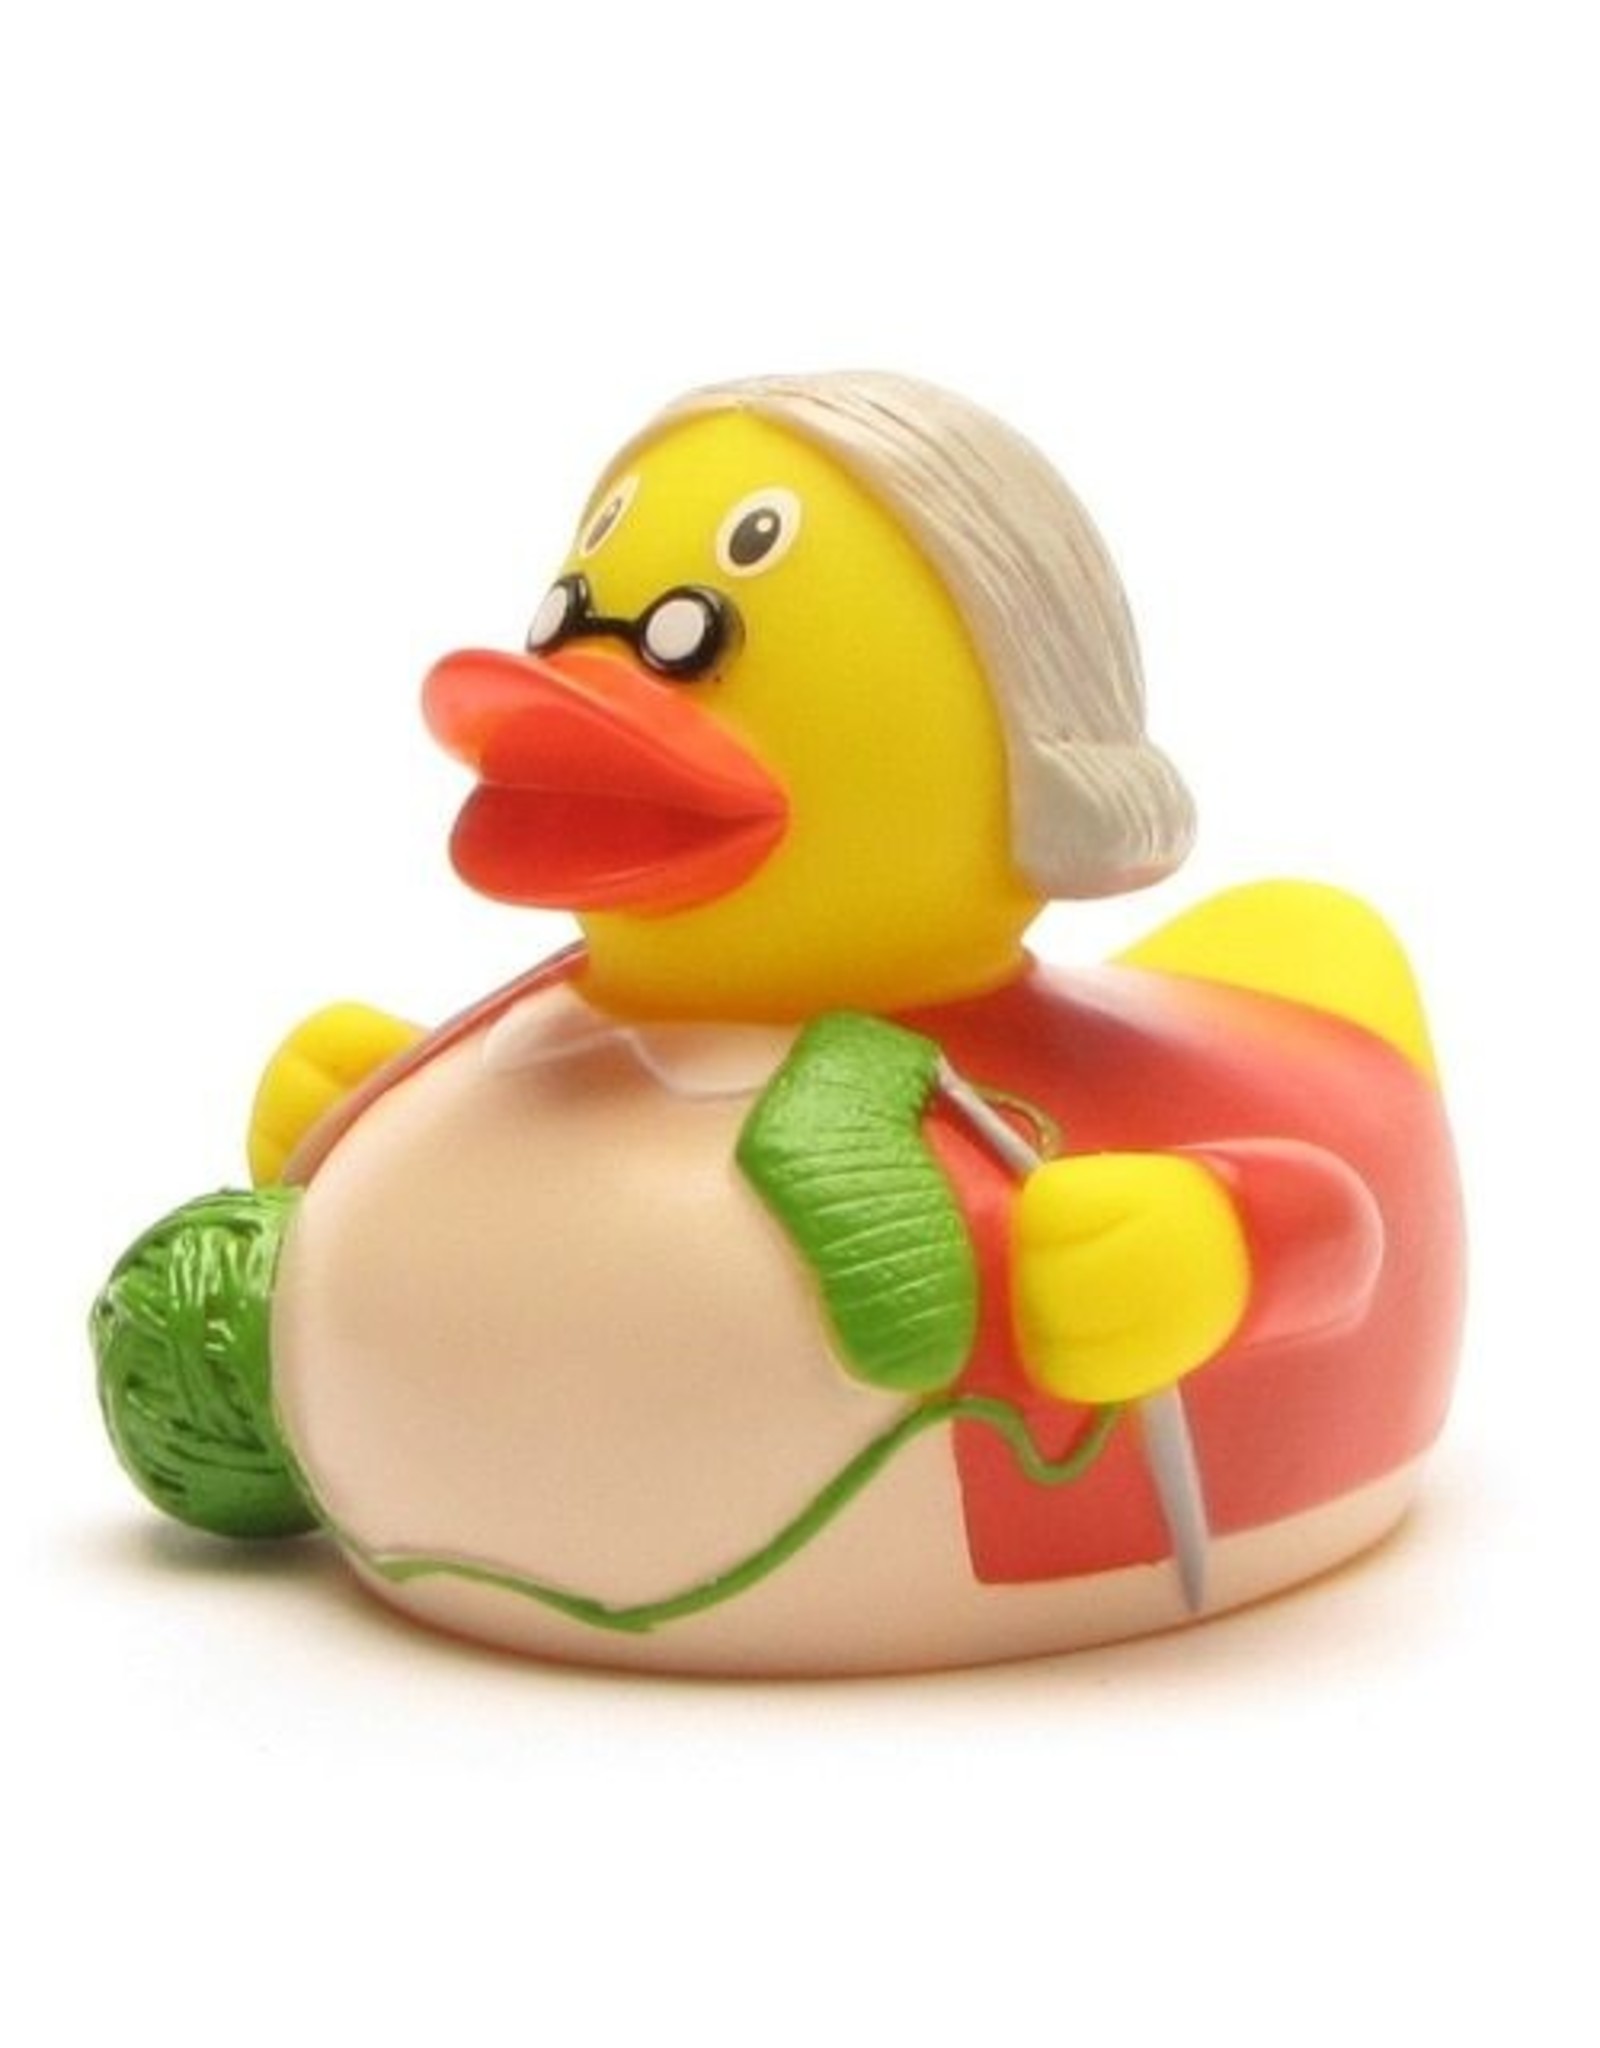 Grandma Rubber Duck